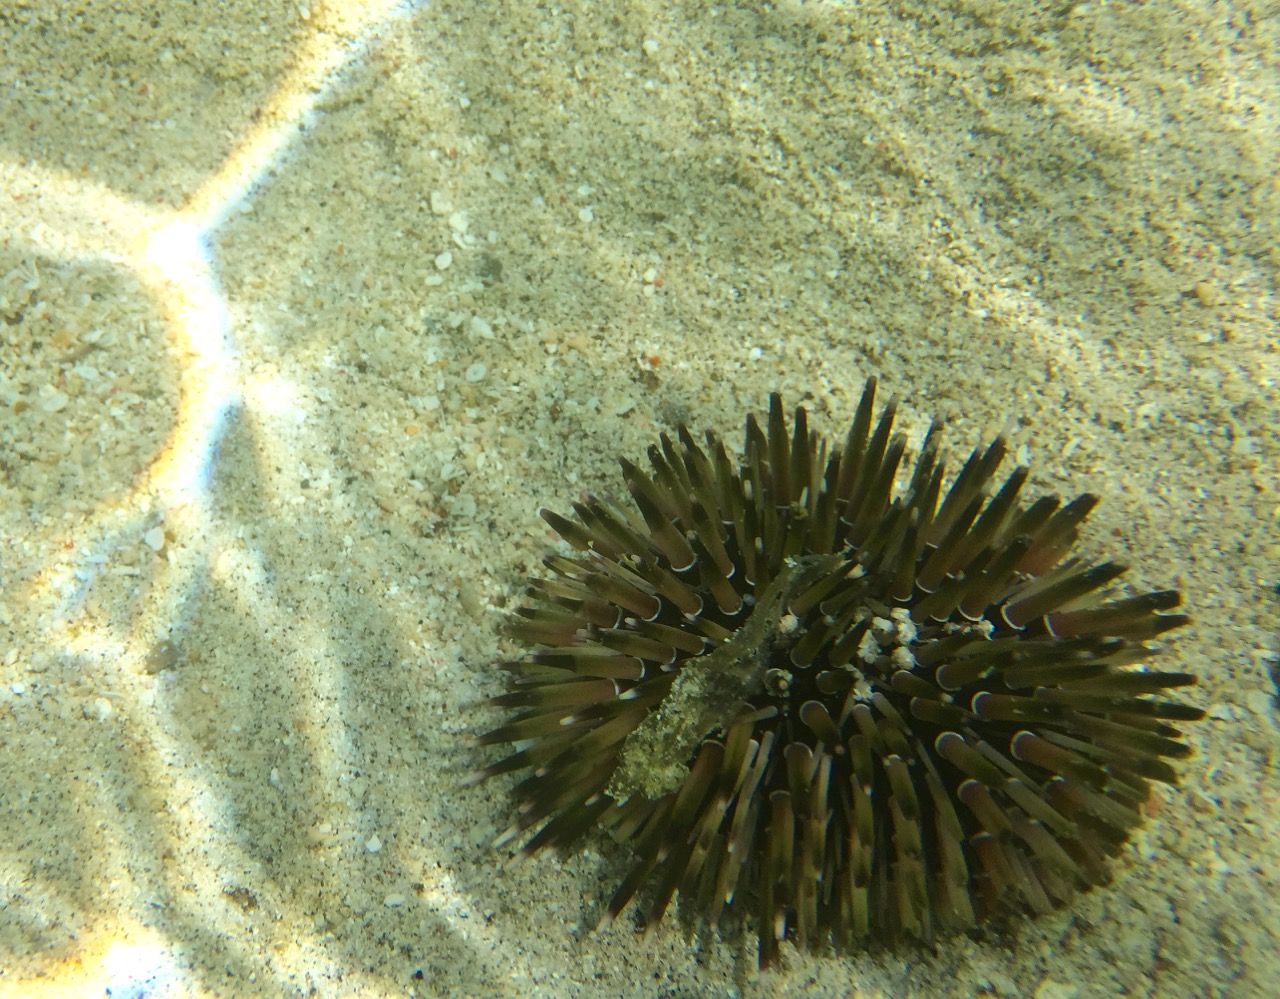 Small sea urchin.